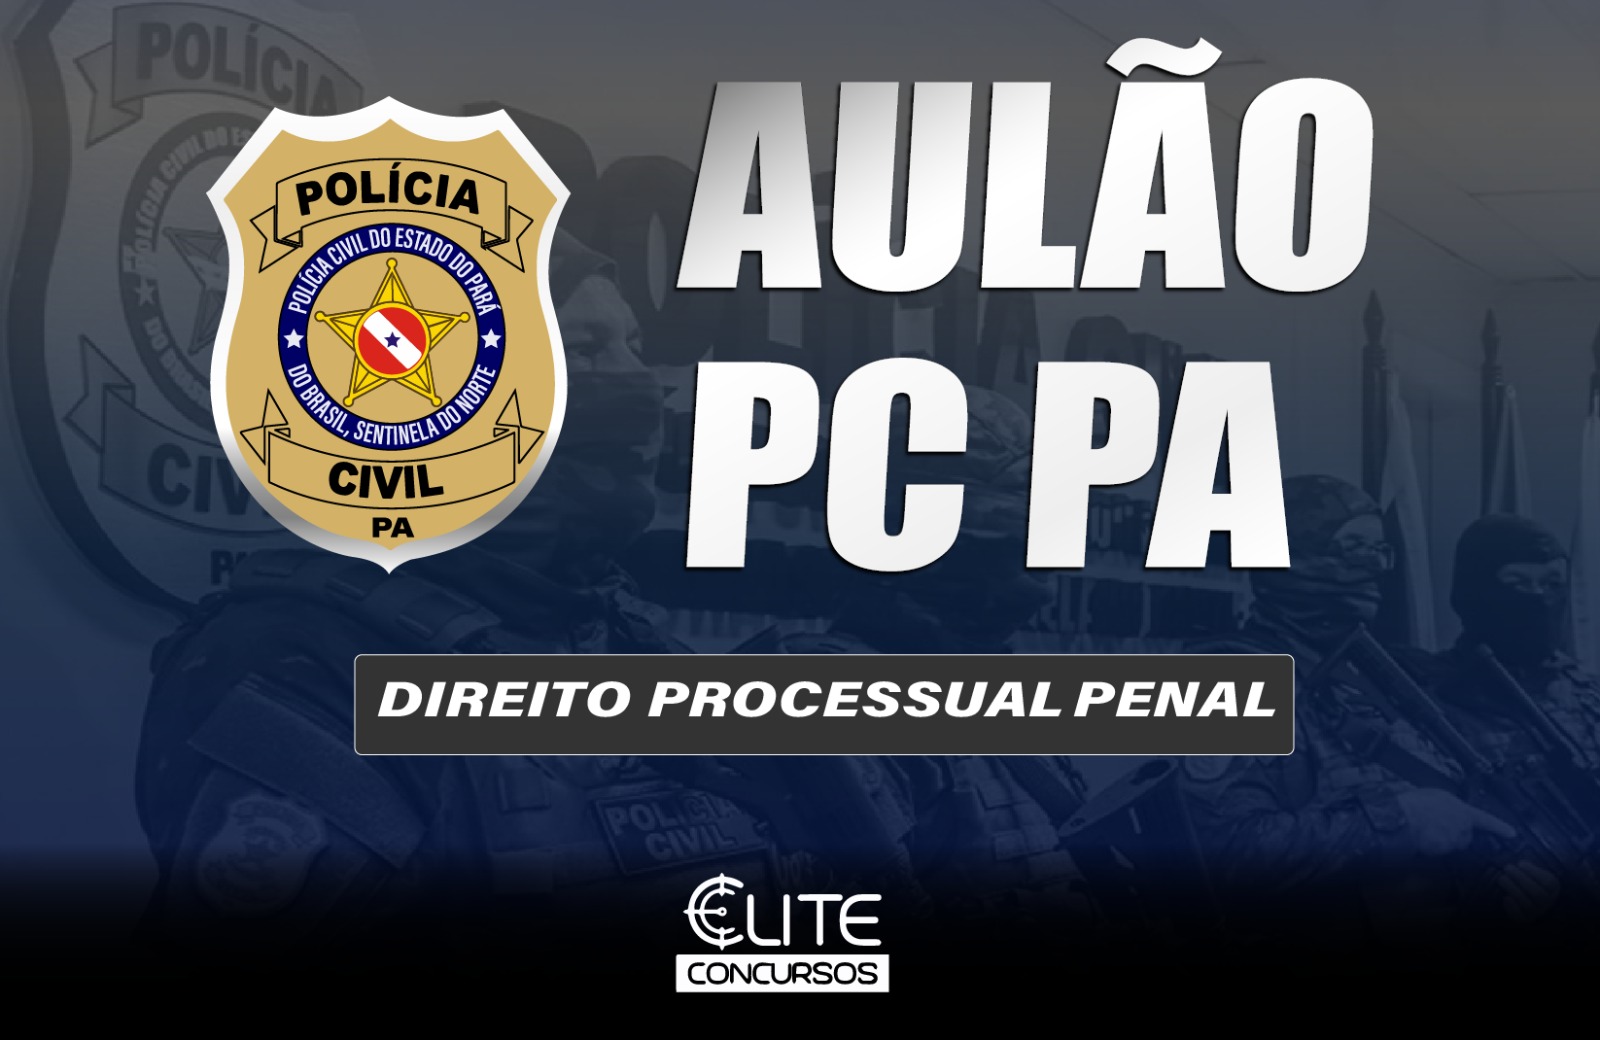 AULO POLCIA CIVIL - PROCESSUAL PENAL - 13/04